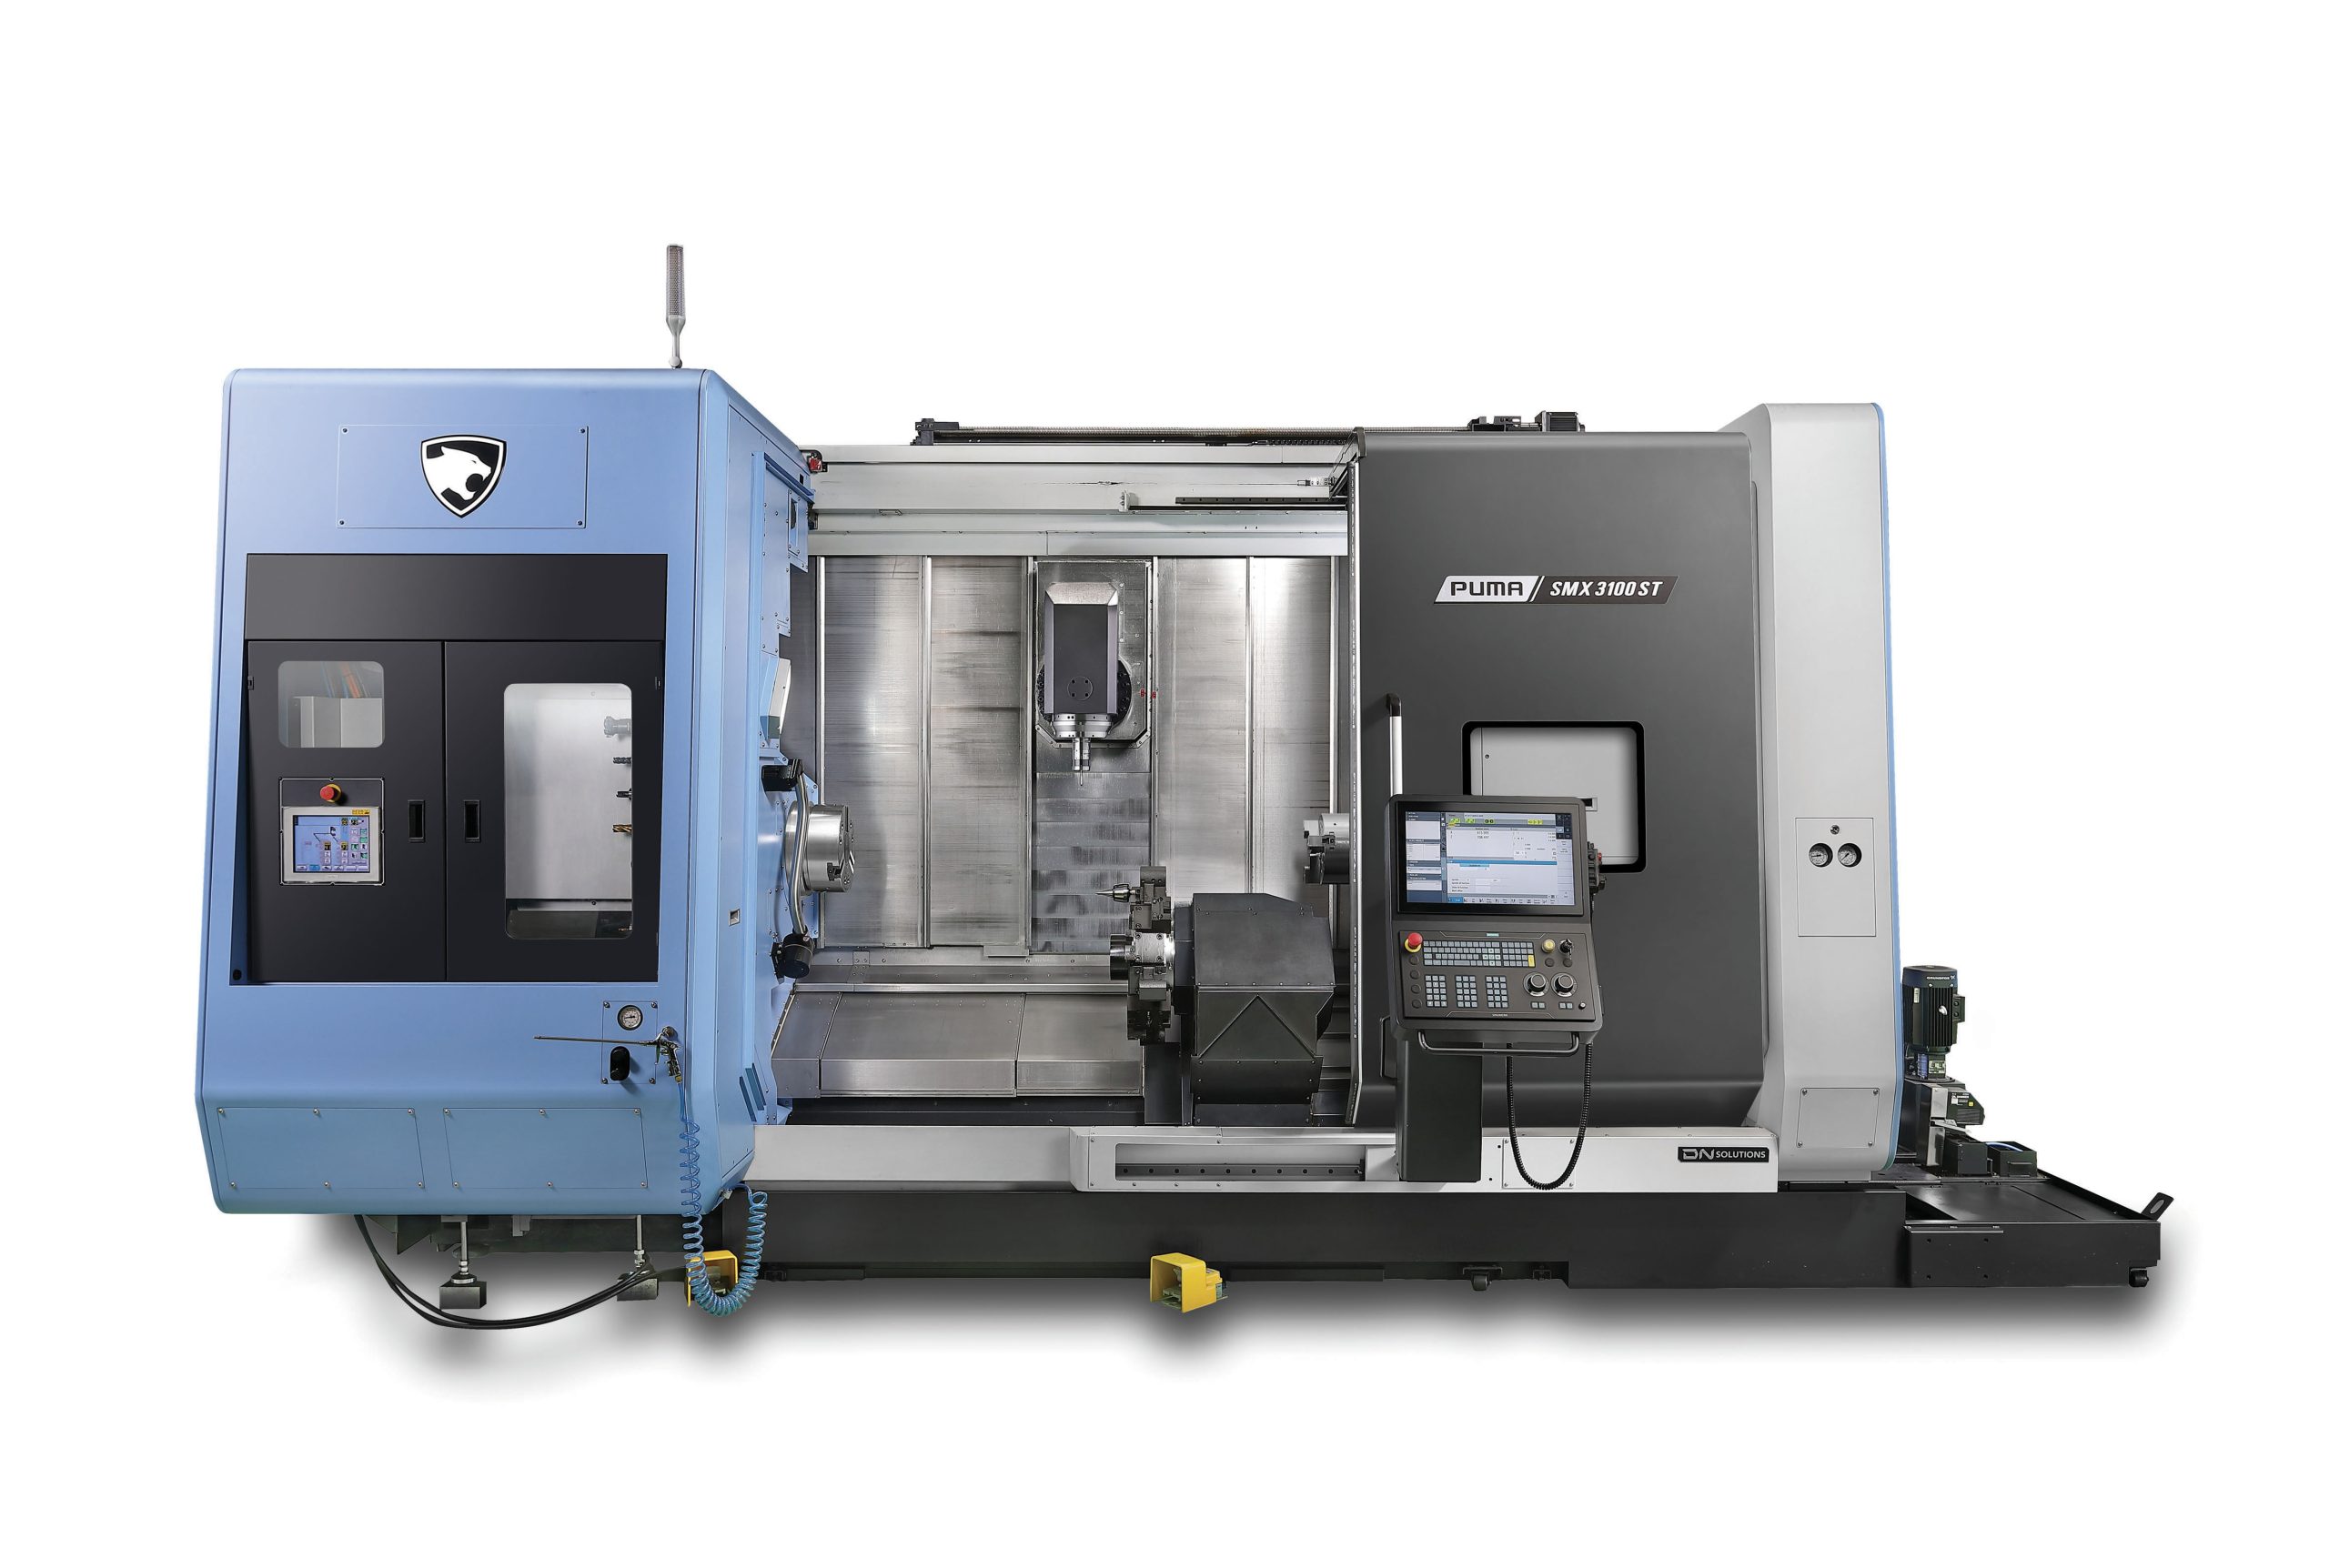 Dn Solutions Puma SMX mill-turn machine